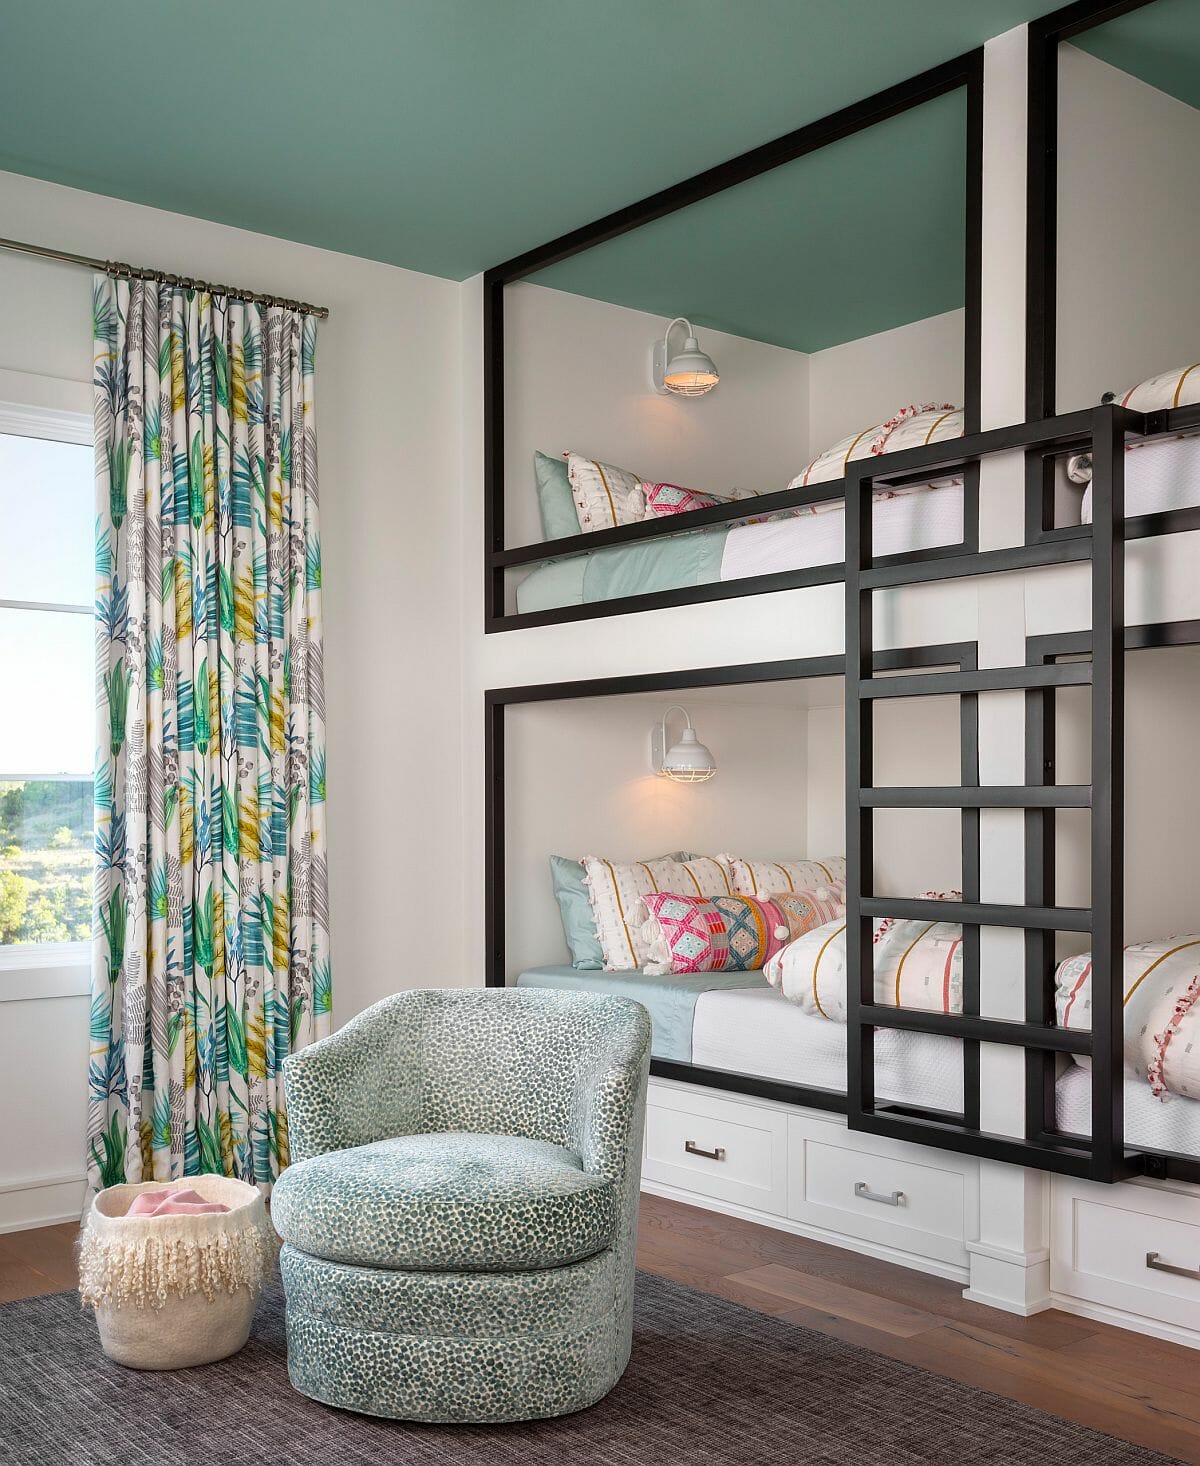 Hình ảnh phòng ngủ trẻ em với giường tầng khung đen trắng, rèm cửa hoa văn nhiệt đới, ghế bành thư giãn, trần sơn màu xanh ngọc